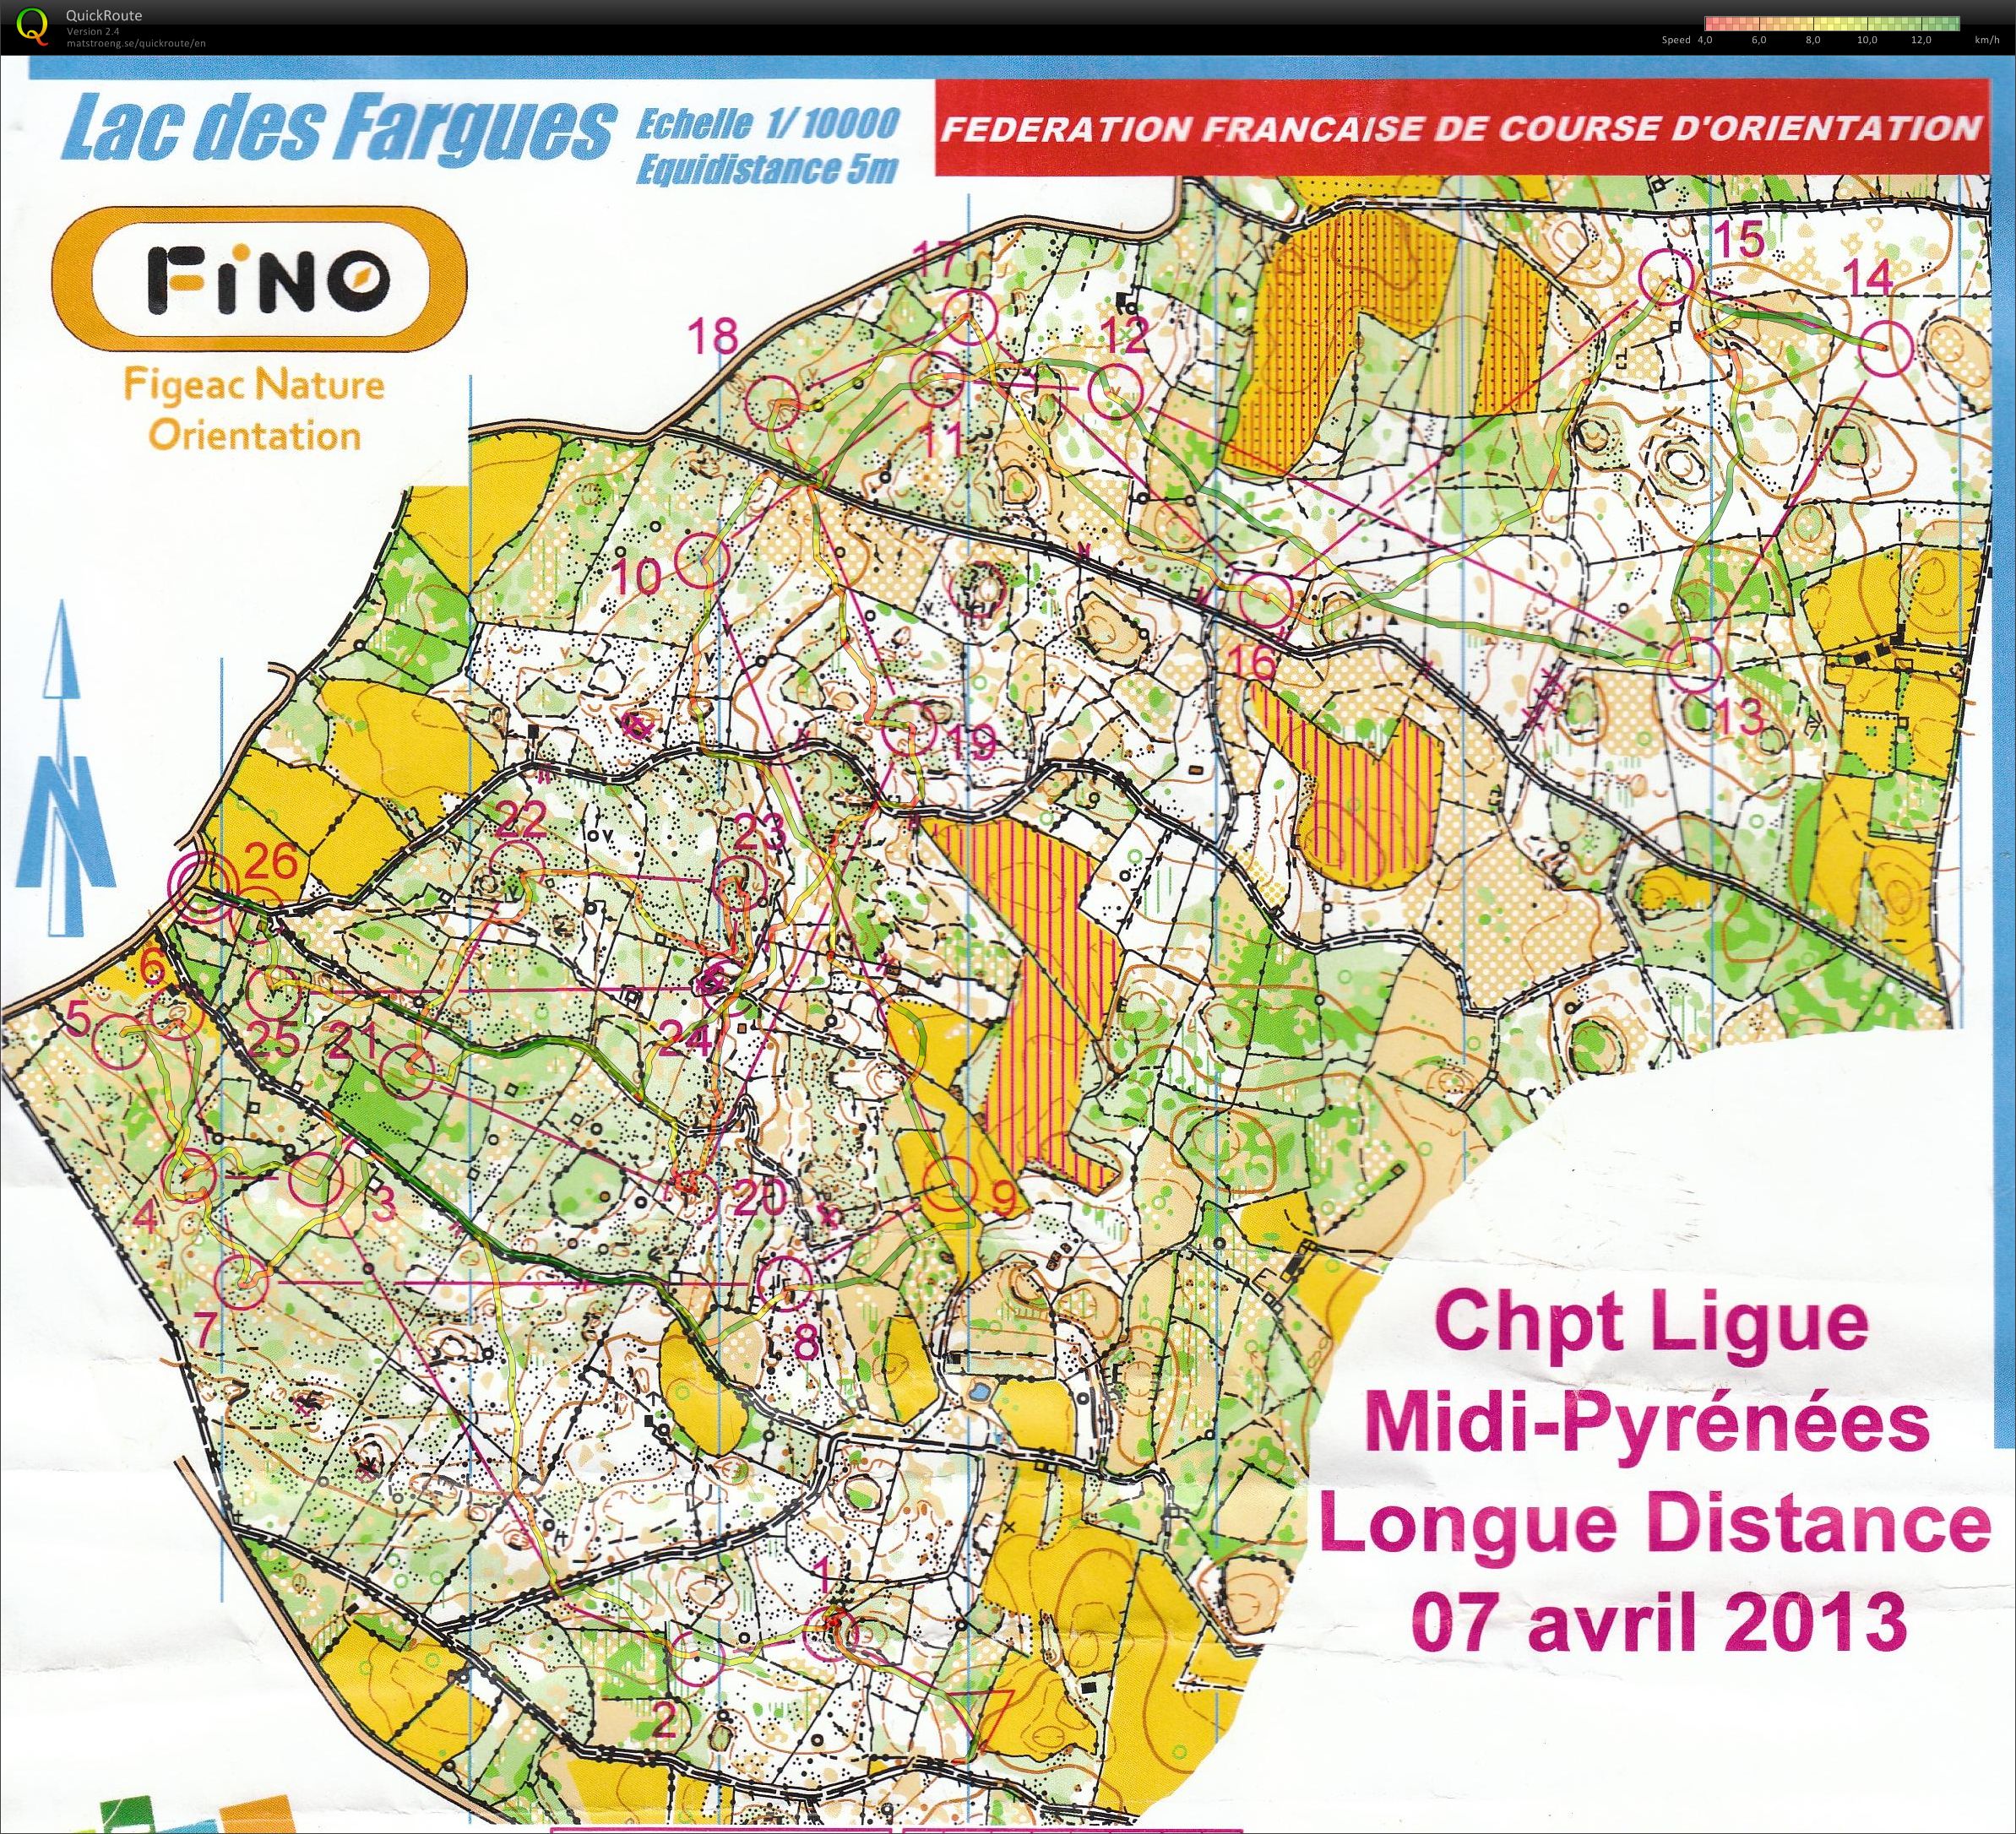 Championnat Régional LD Midi-Pyrénées (07/04/2013)